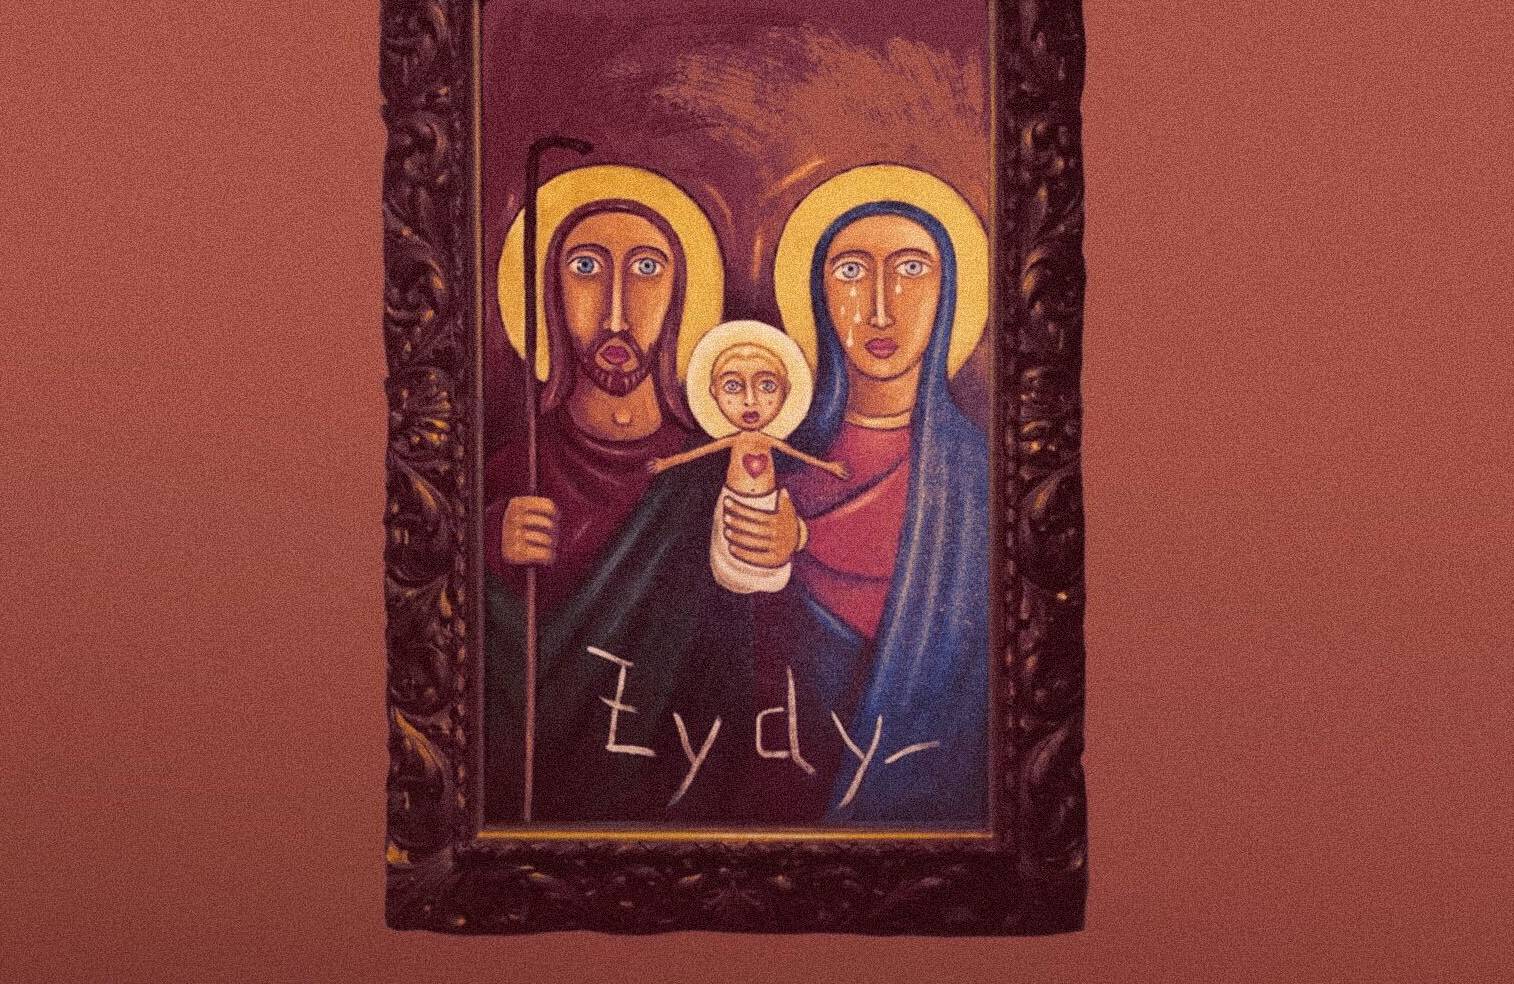 Obraz przedstawia Marię, Józefa i dzieciątko